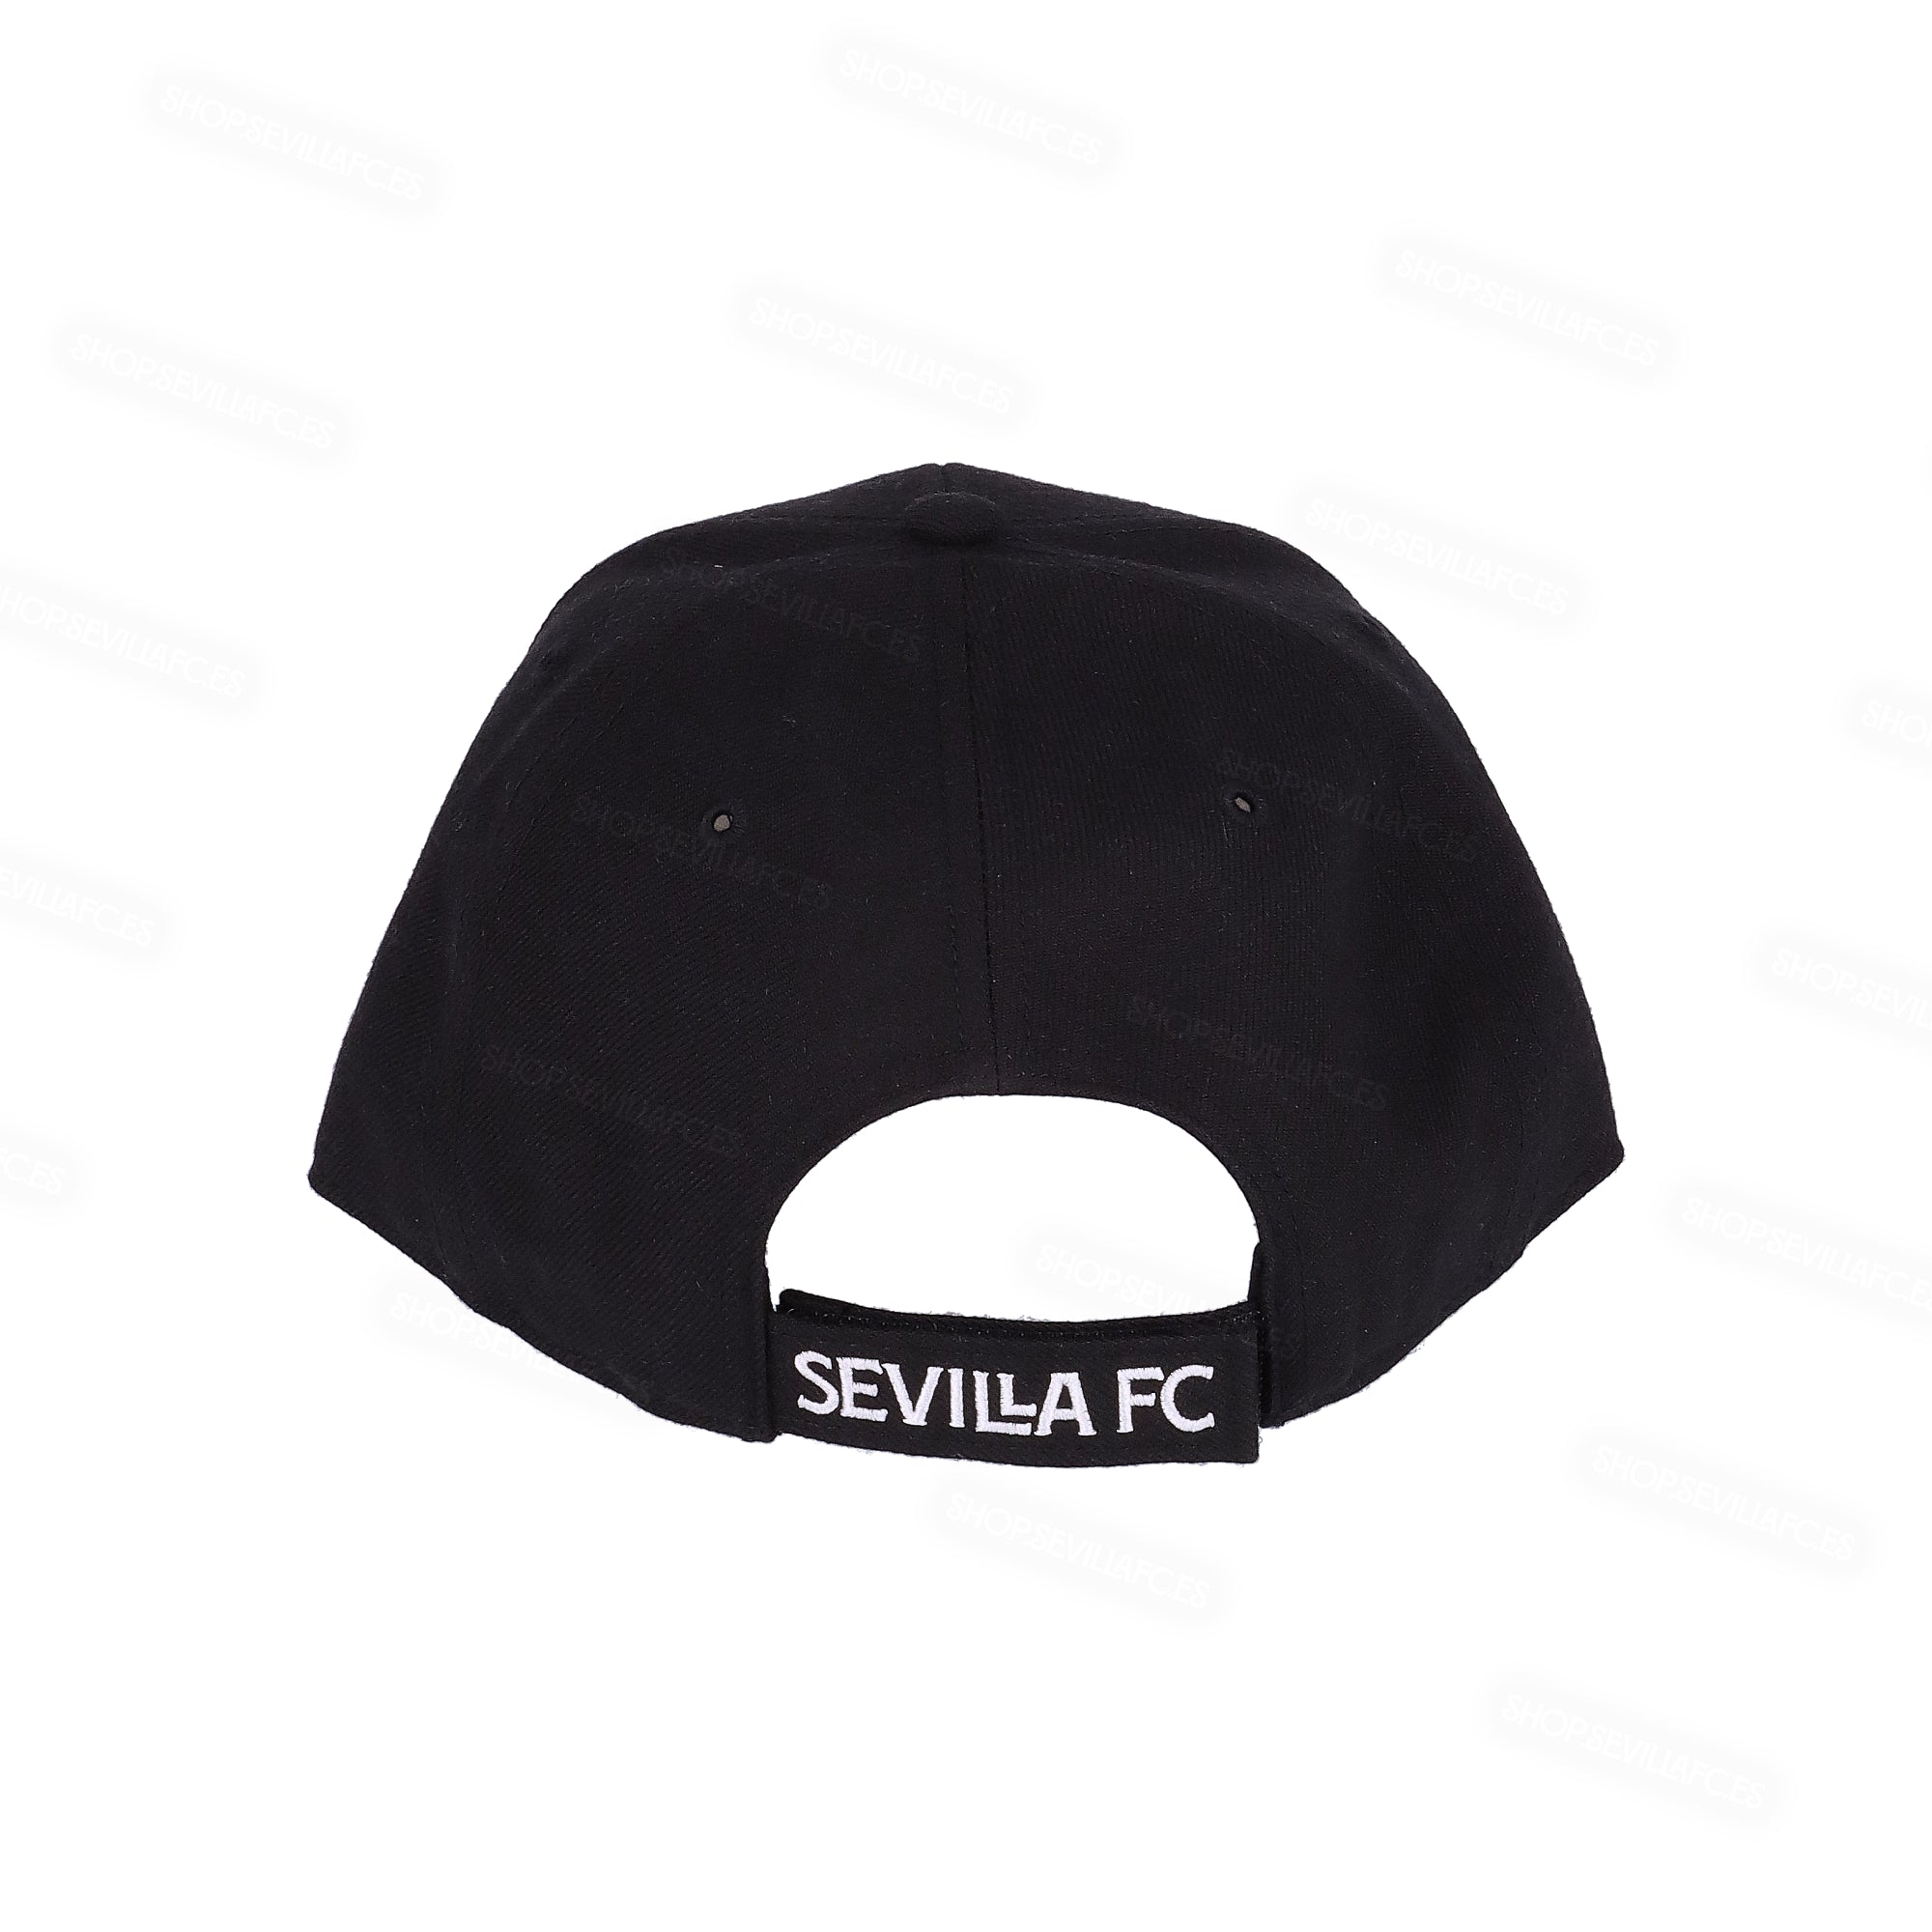 Riñonera negra con escudo del Sevilla Fútbol Club